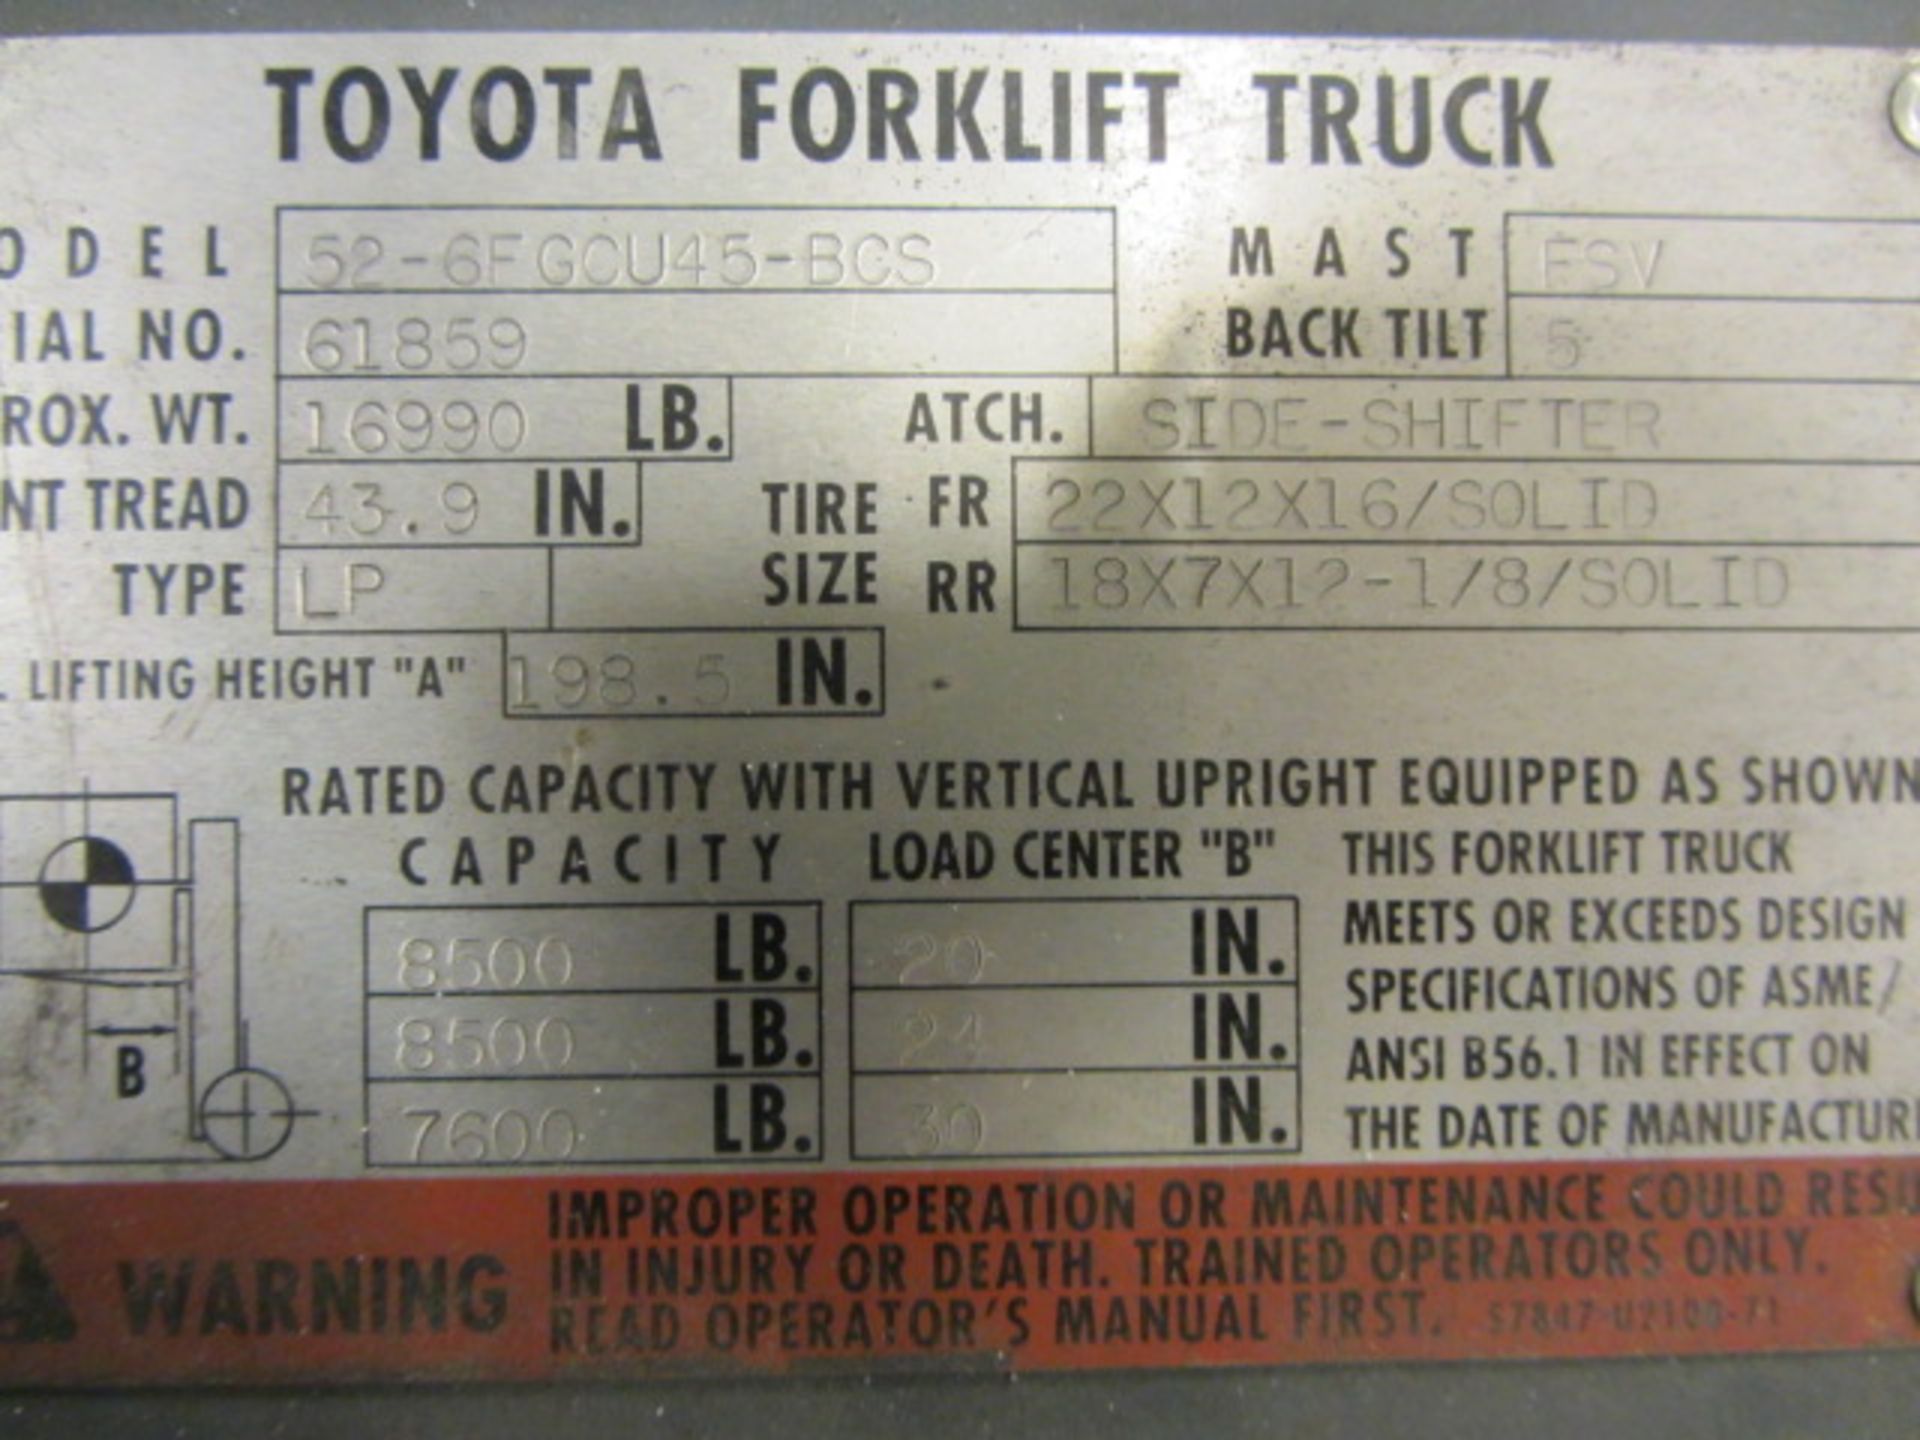 Toyota Model 52-6FGCU45-BCS 8500lb LP Forklift with (3) Stage Mast with Side Shift, 72'' Long Forks, - Image 6 of 7